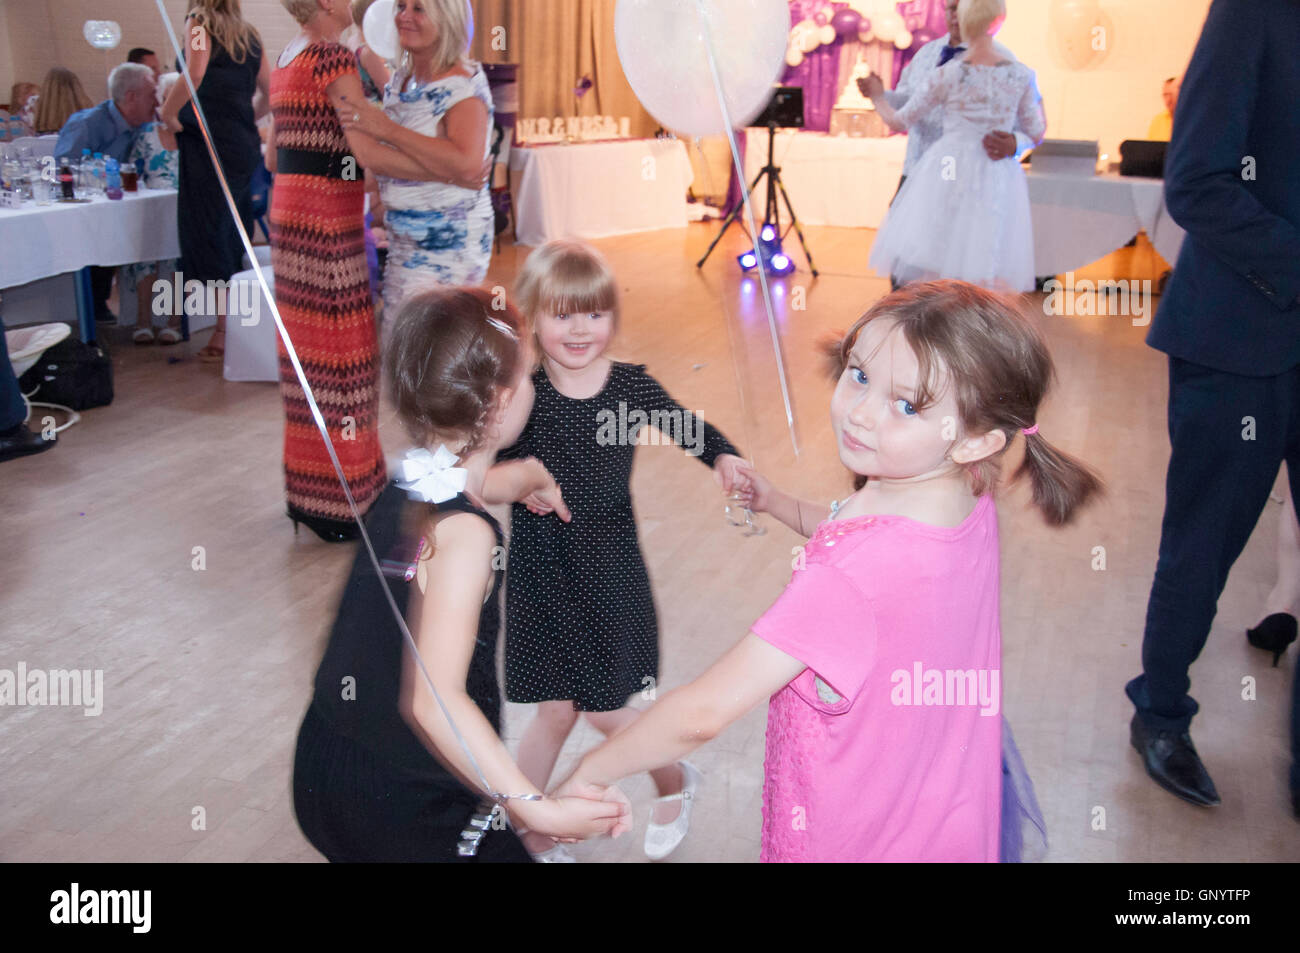 Les enfants danser à réception de mariage, Staines-upon-Thames, Surrey, Angleterre, Royaume-Uni Banque D'Images